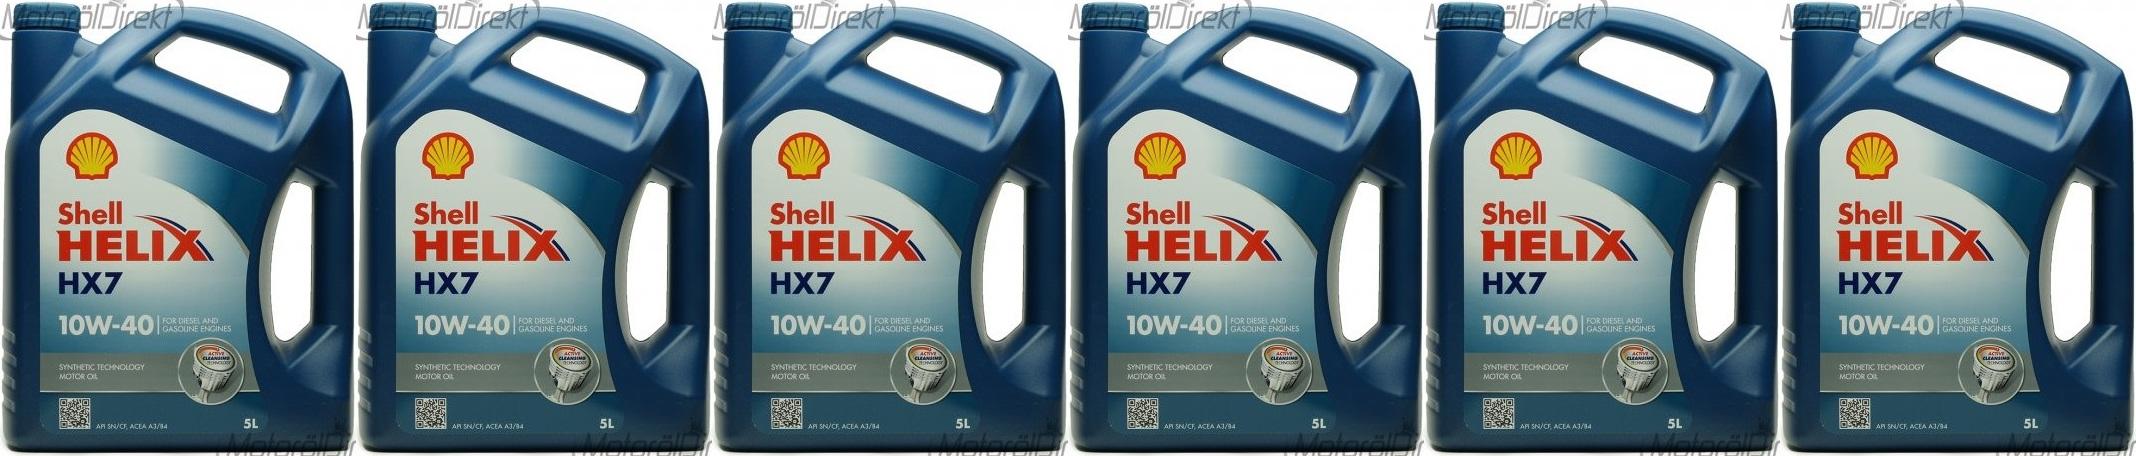 Shell Helix HX7 10W-40 Motoröl 6x 5 = 30 Liter - SAE 10W-40 - Auto